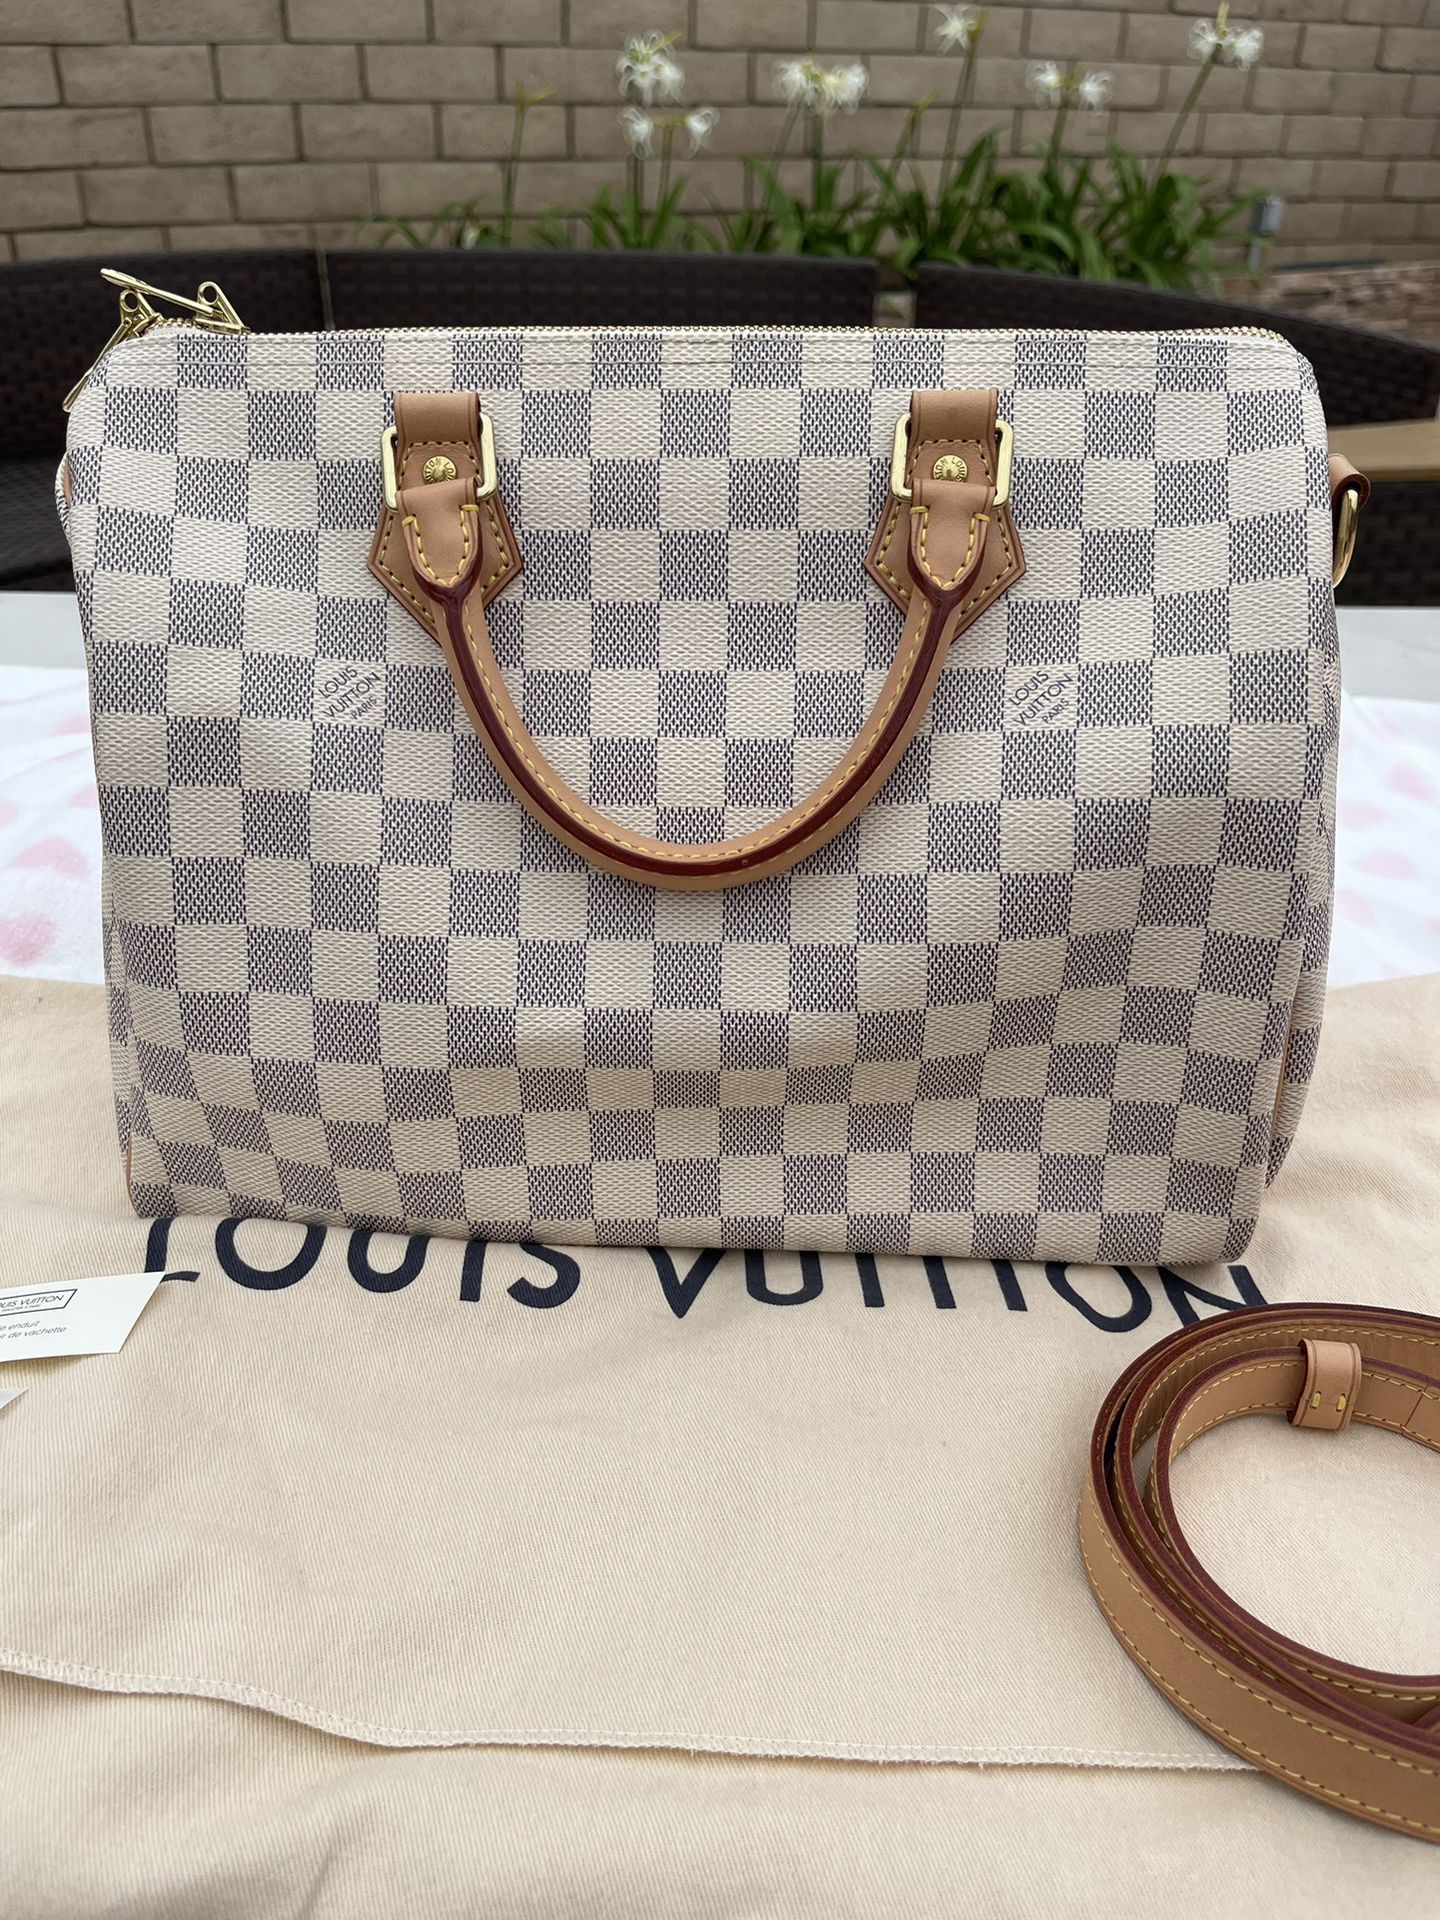 LOUIS VUITTON White Croisette Damier Azur Satchel Crossbody Bag for Sale in  Kearny, NJ - OfferUp